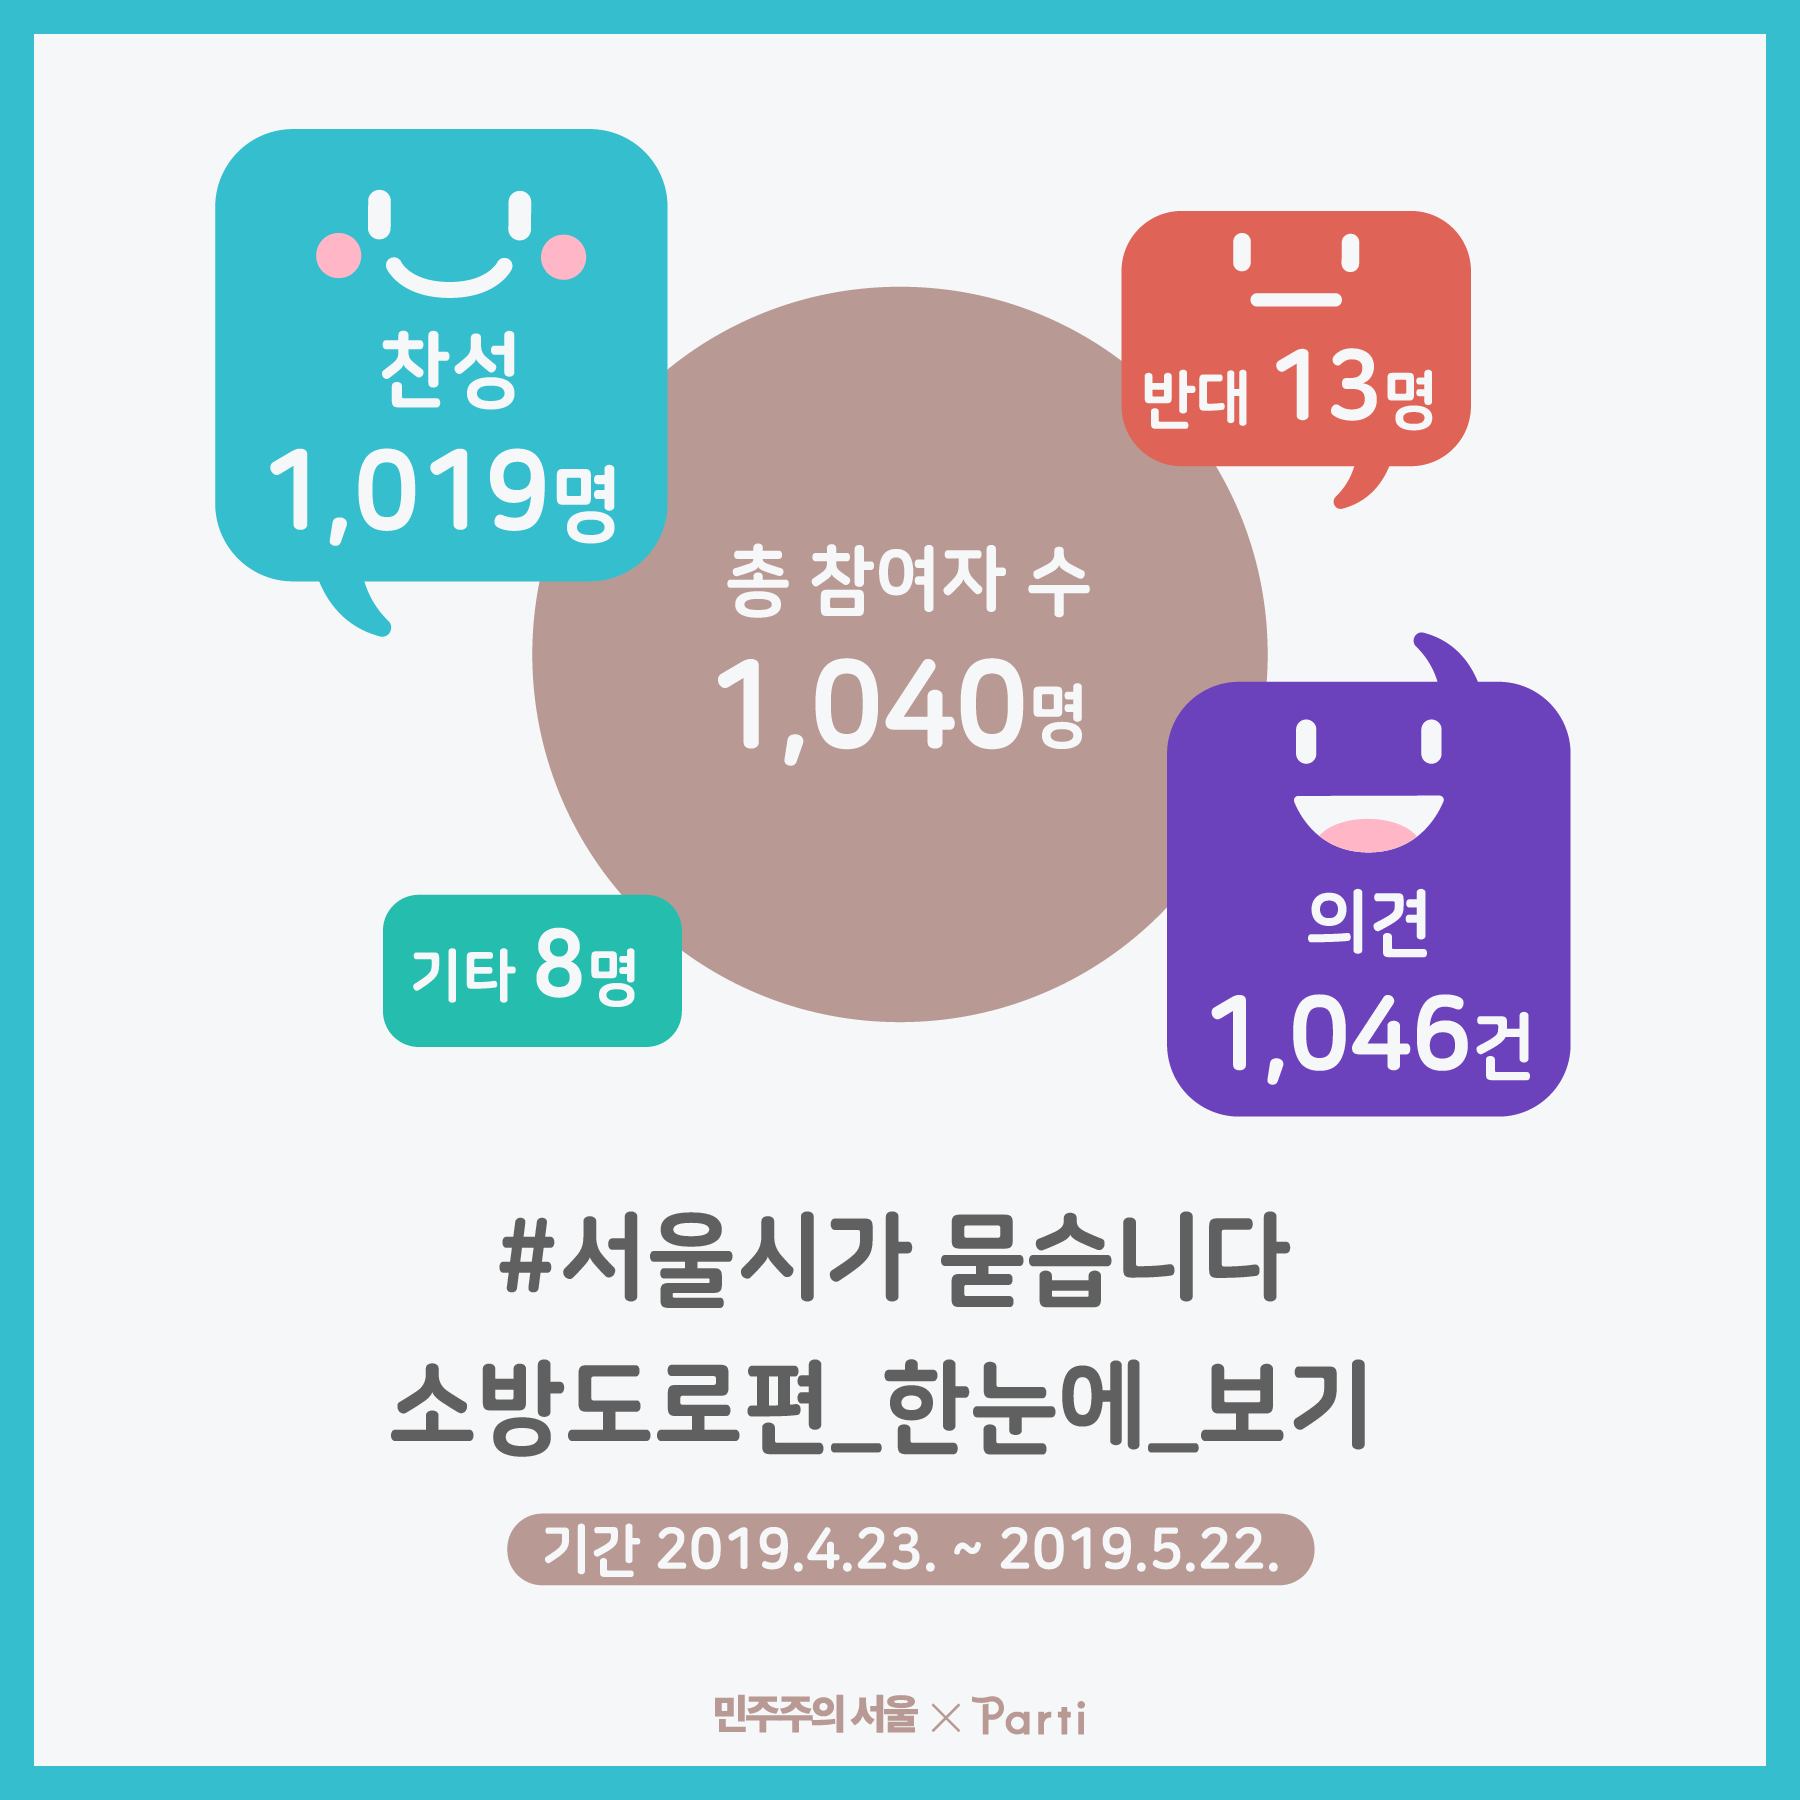 총 1,040명이 참여했고, 찬성 1,019명, 반대 13명, 기타 8명이 의견을 내주셨습니다 #서울시가 묻습니다 소방도로편 한눈에 보기 기간 2019년 4월 23일부터 2019년 5월 22일까지